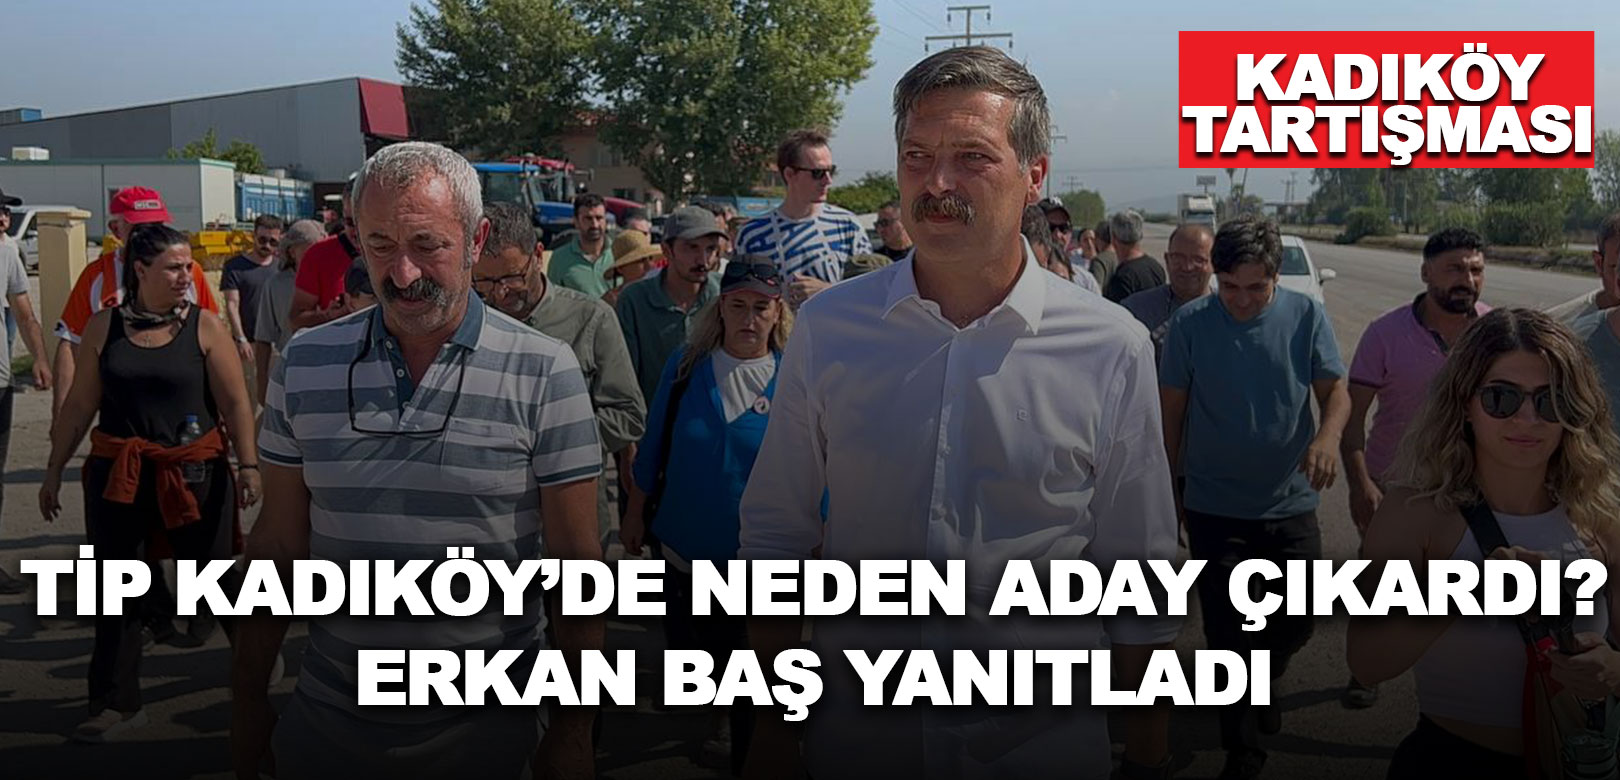 Erkan Baş Kadıköy'de neden aday çıkardıklarını açıkladı: Biz en iyisi olduğumuzu iddia ediyoruz